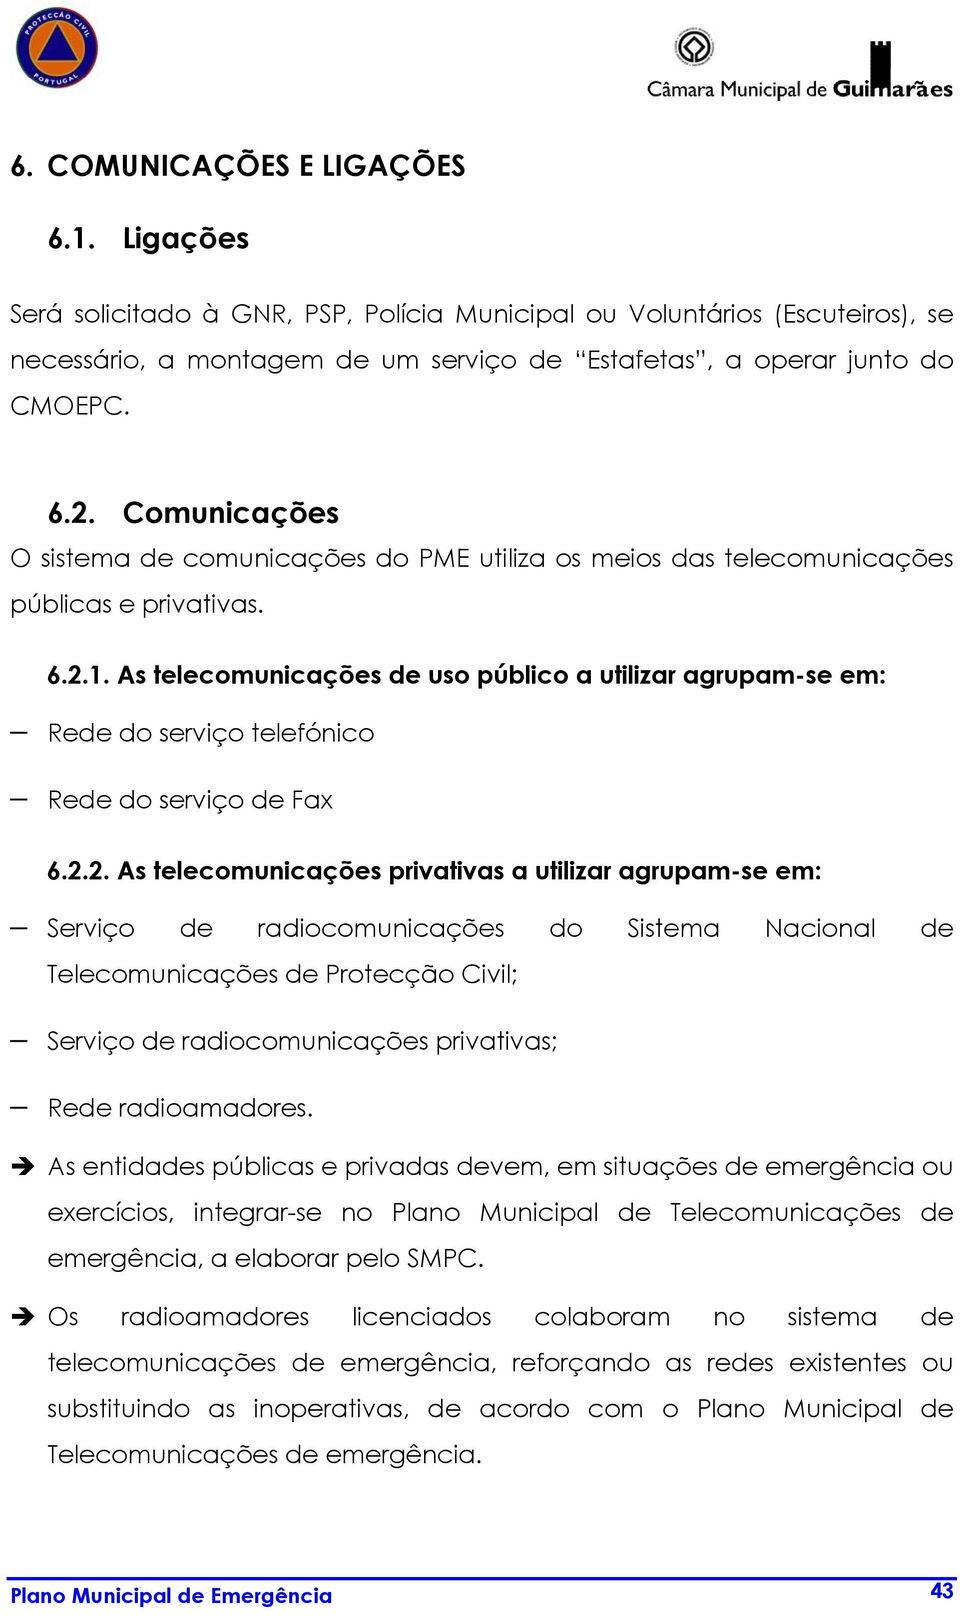 As telecomunicações uso público a utilizar agrupam-se em: Re do serviço telefónico Re do serviço Fax 6.2.